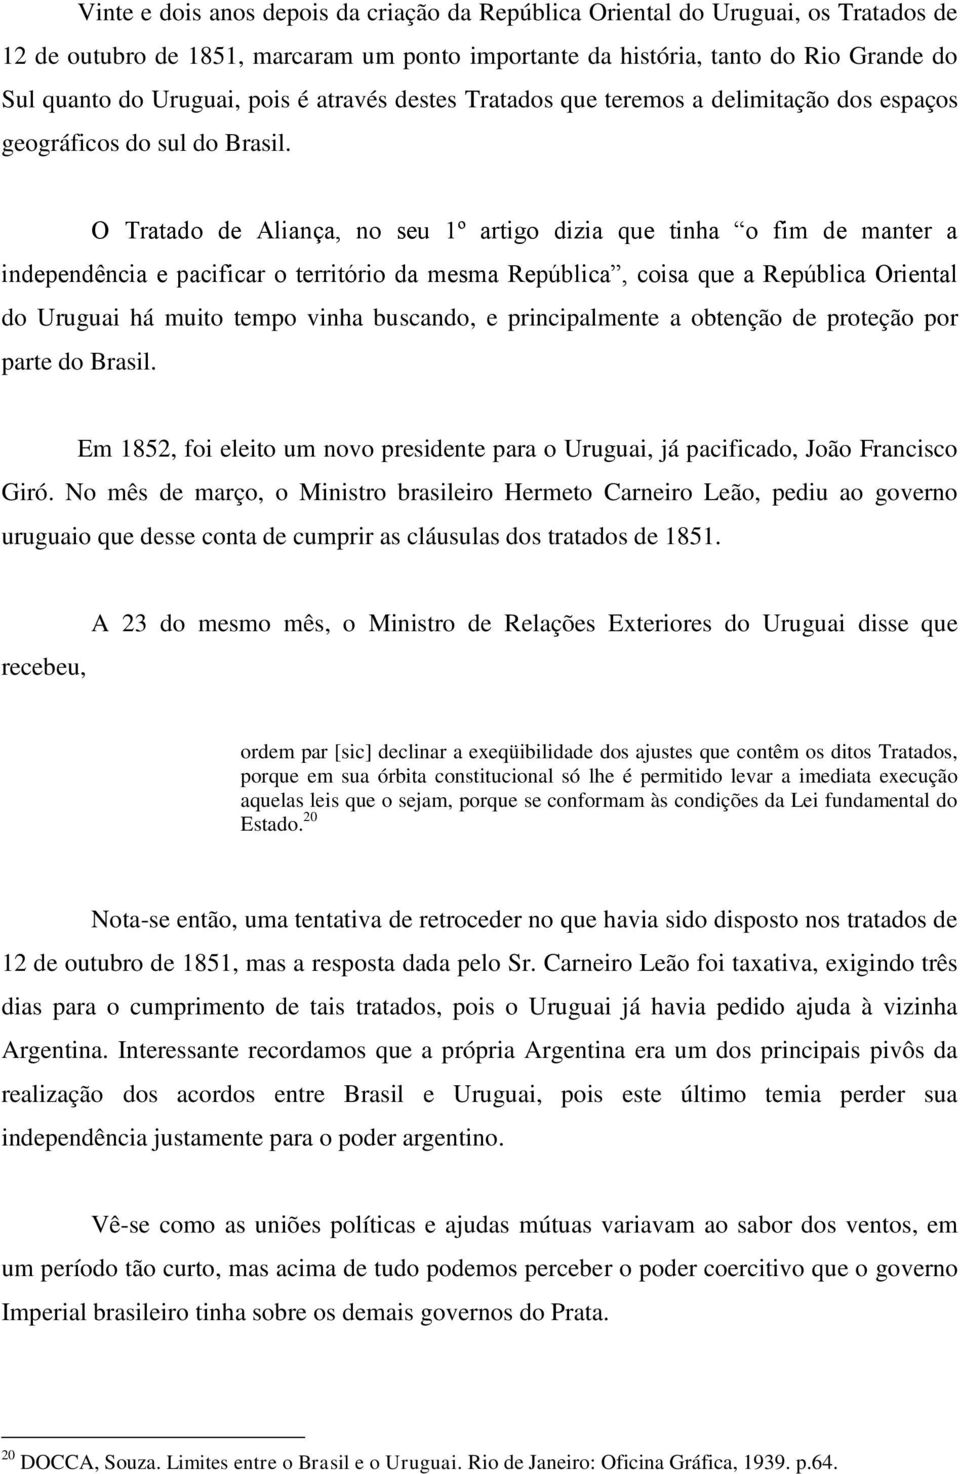 O Tratado de Aliança, no seu 1º artigo dizia que tinha o fim de manter a independência e pacificar o território da mesma República, coisa que a República Oriental do Uruguai há muito tempo vinha